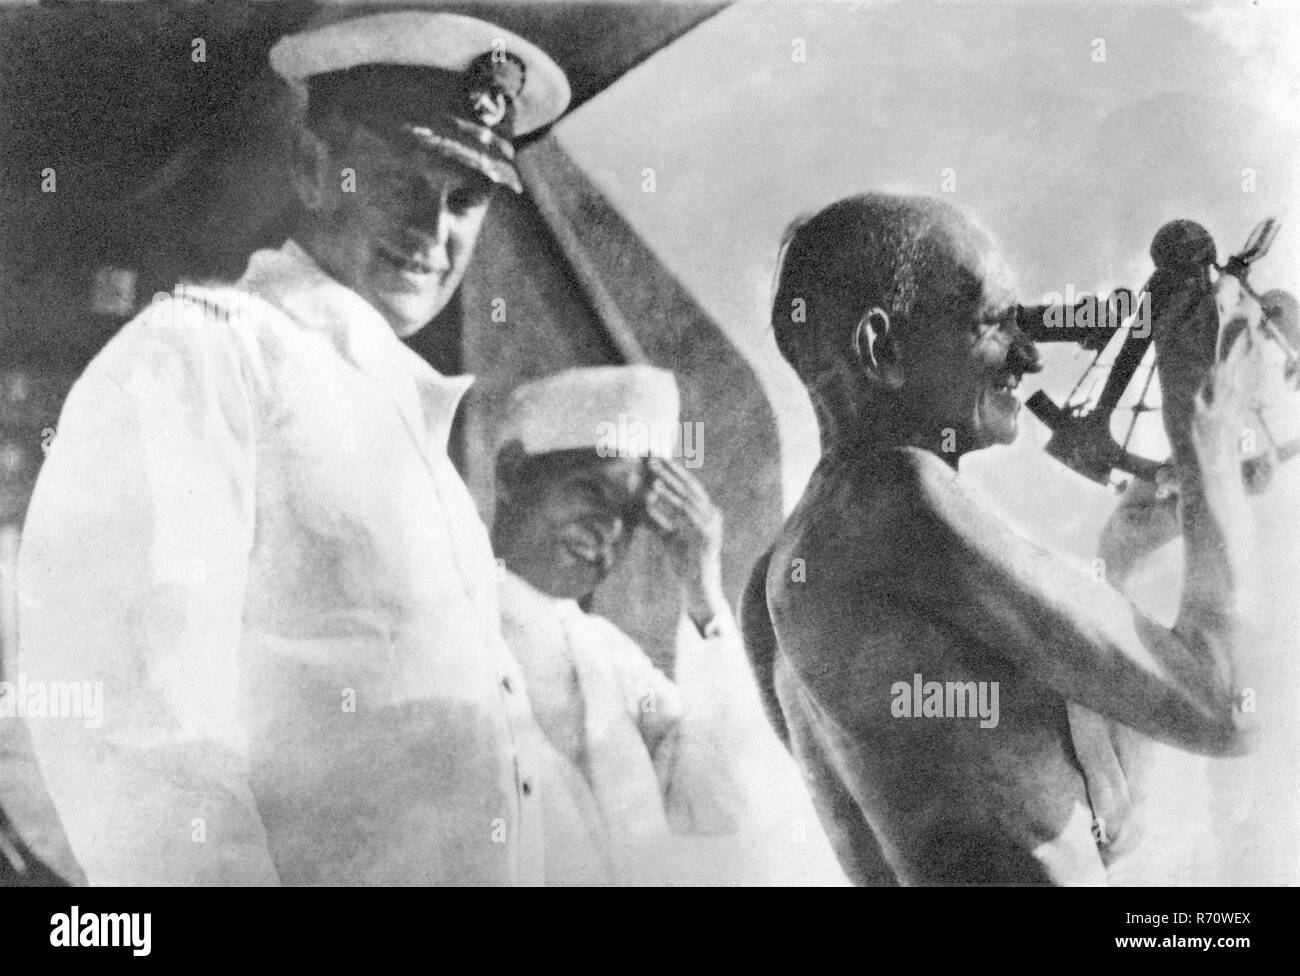 Mahatma Gandhi maniant un instrument nautique sur le pont capitaine de SS Rajputana, navire de passagers britannique, septembre 1931, ancienne image vintage 1900 Banque D'Images